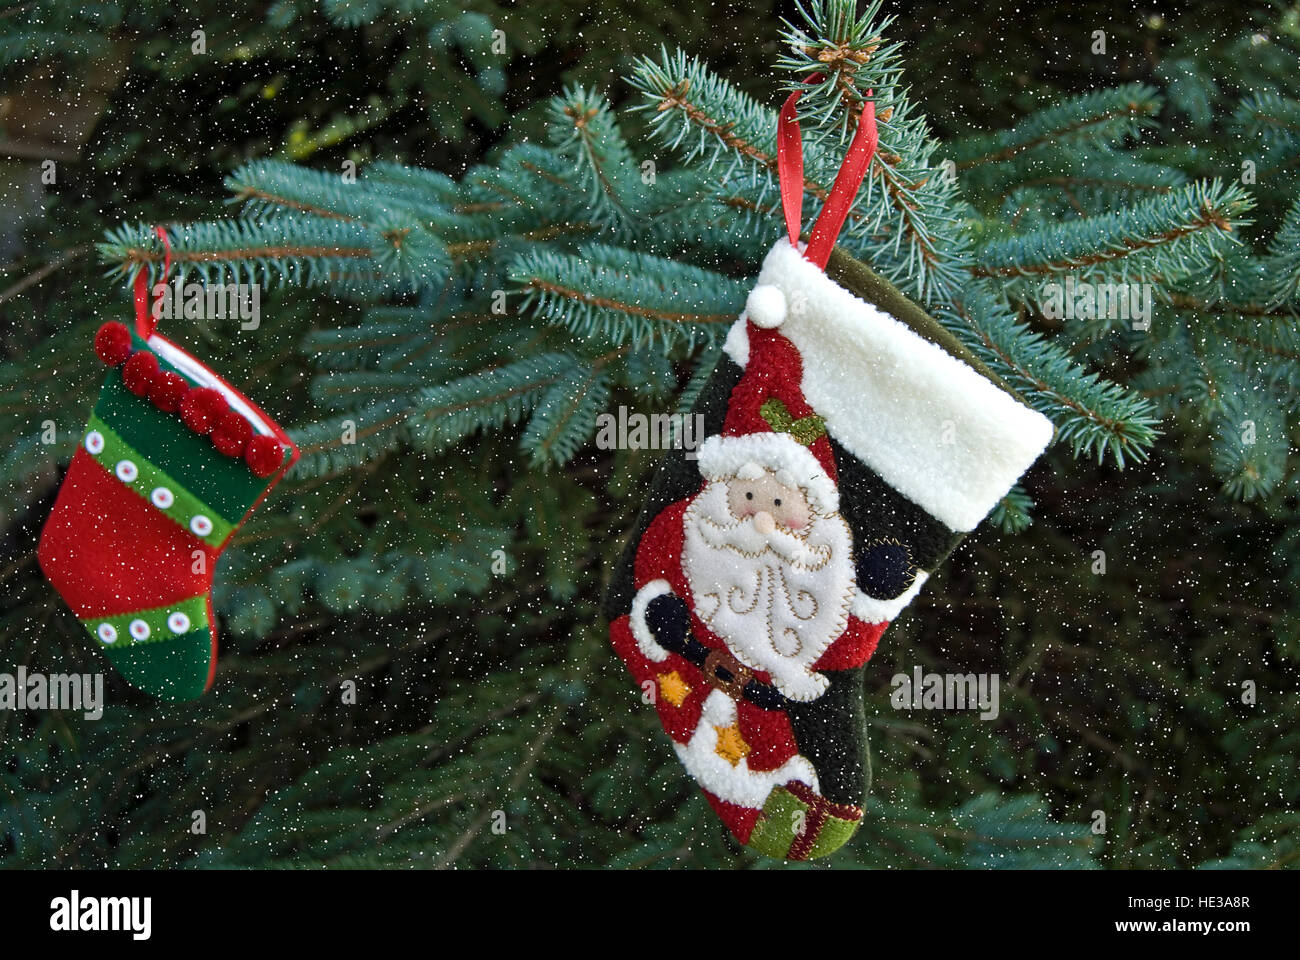 Weihnachts-Strumpf hängen Blaufichten Baum mit Schneeflocken Stockfoto